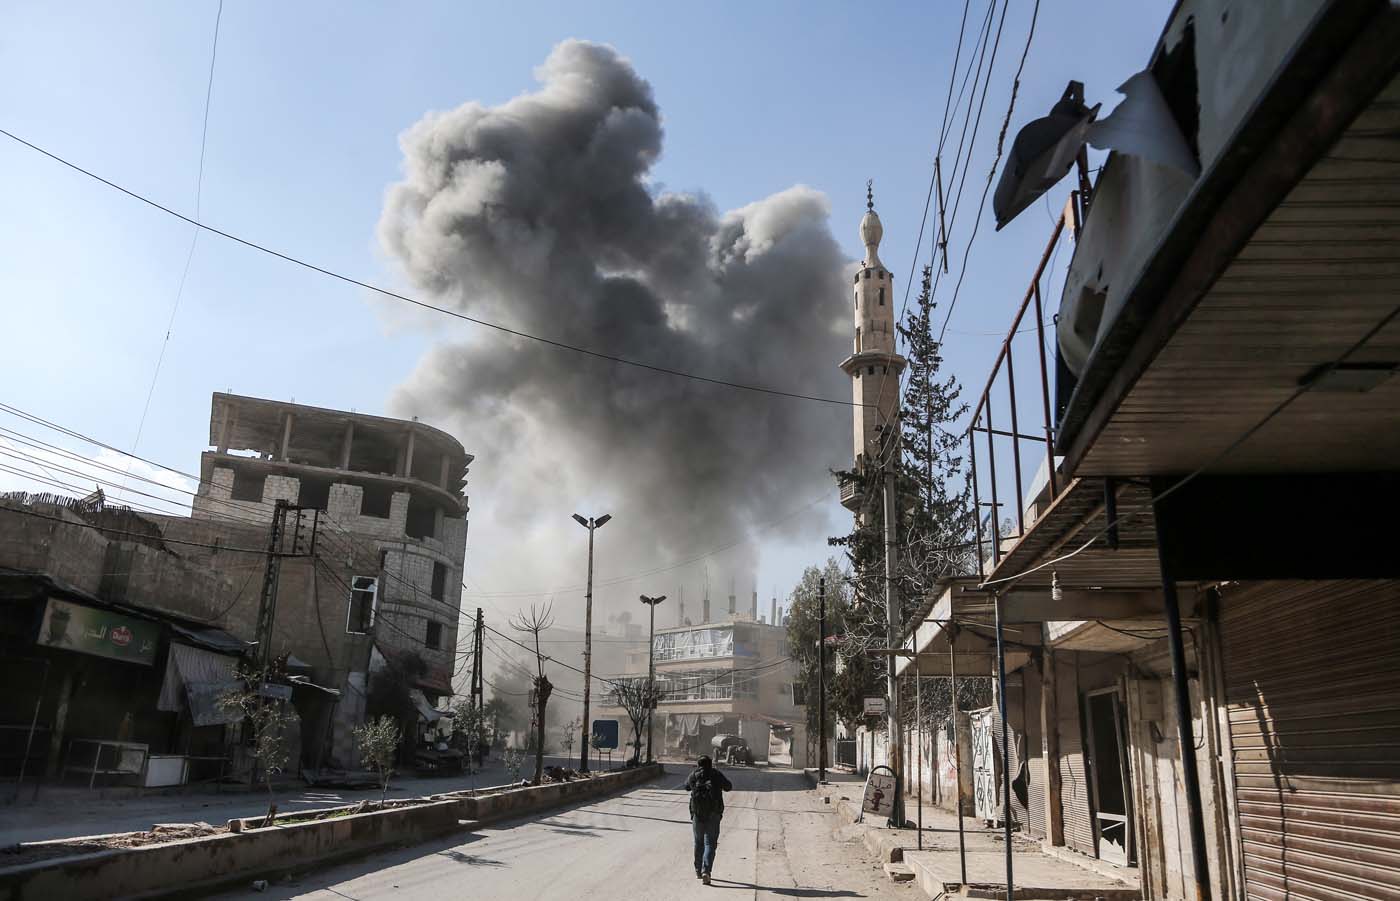 El régimen sirio vuelve a bombardear Guta a pesar de la resolución de la ONU